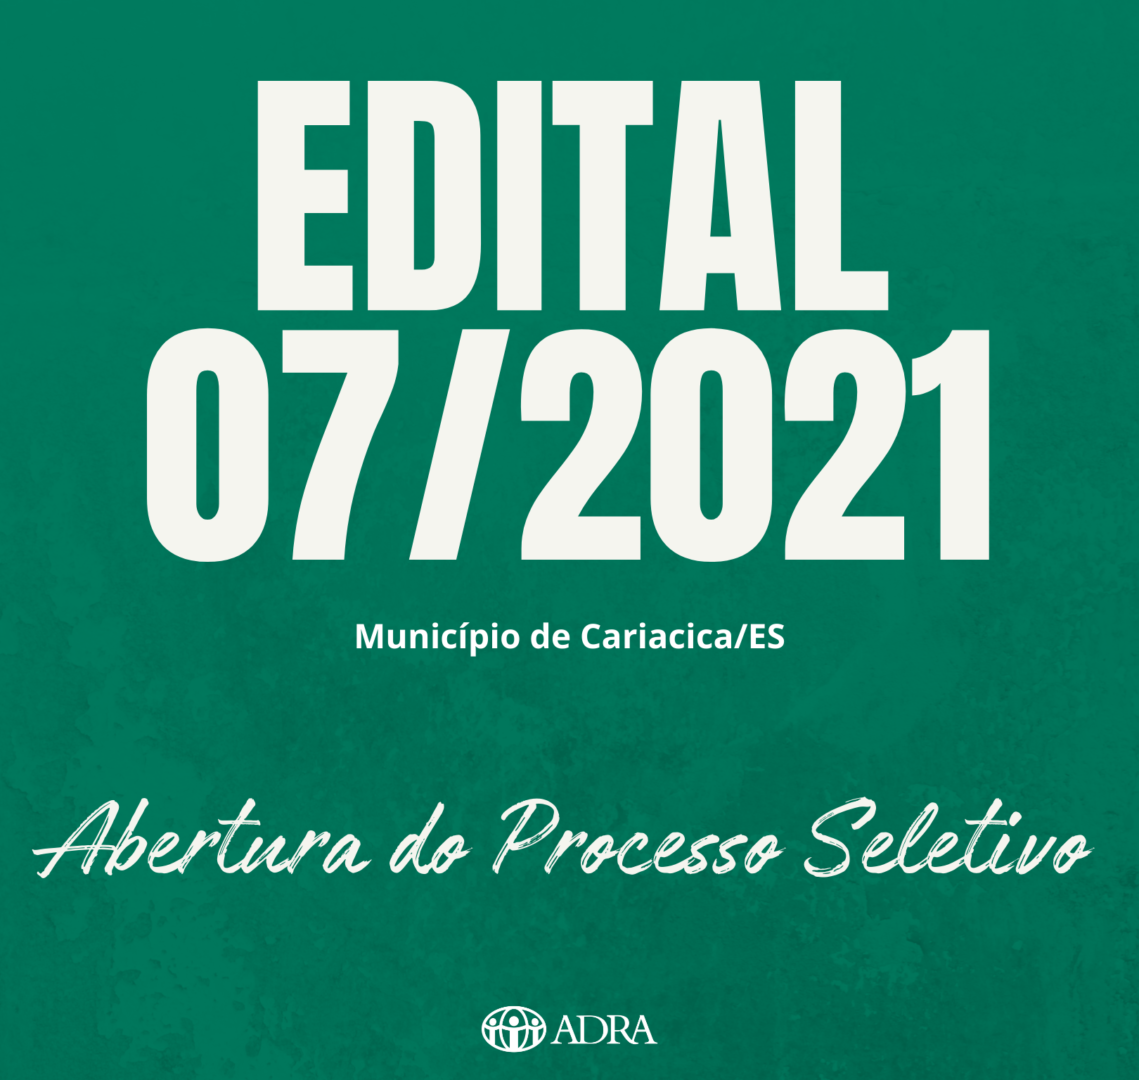 EDITAL nº 07/2021 – ABERTURA DO PROCESSO SELETIVO